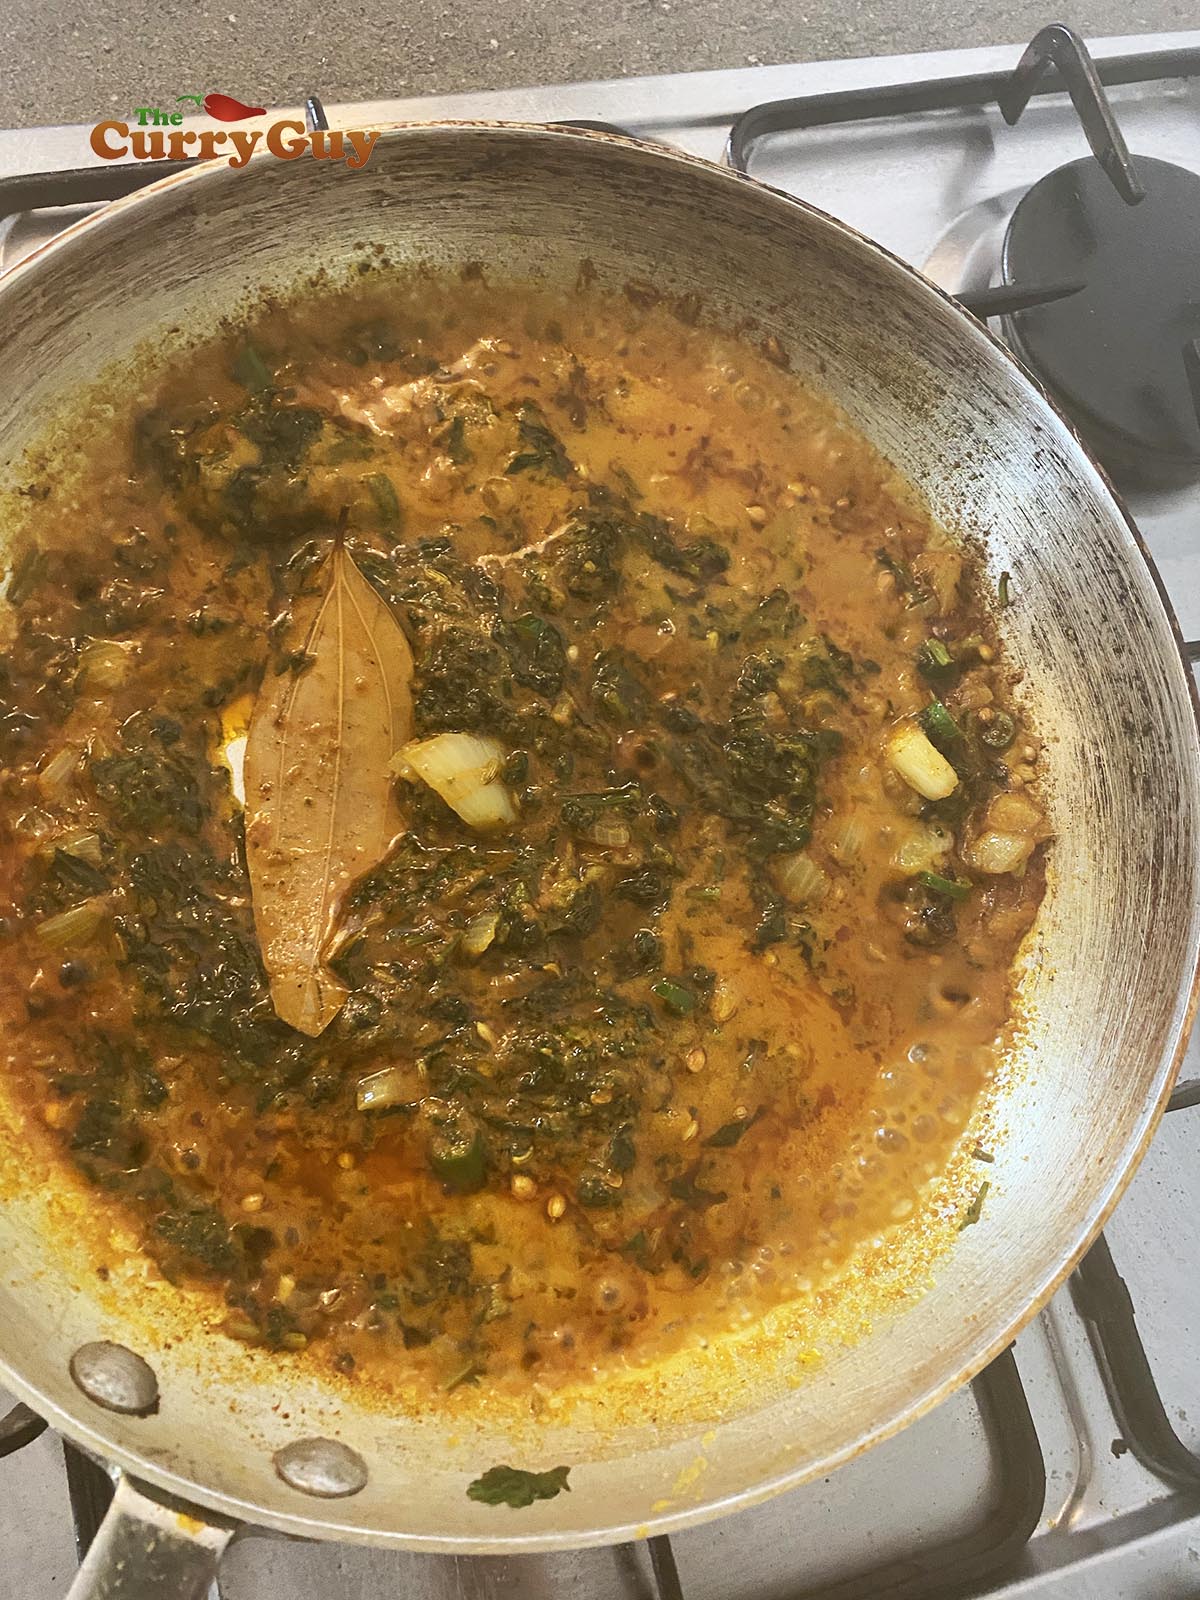 Adding base sauce to pan.